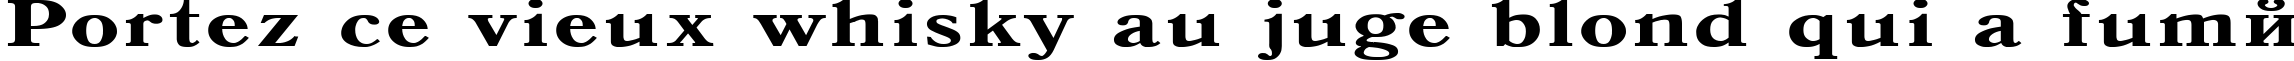 Пример написания шрифтом Antiqua 140b текста на французском